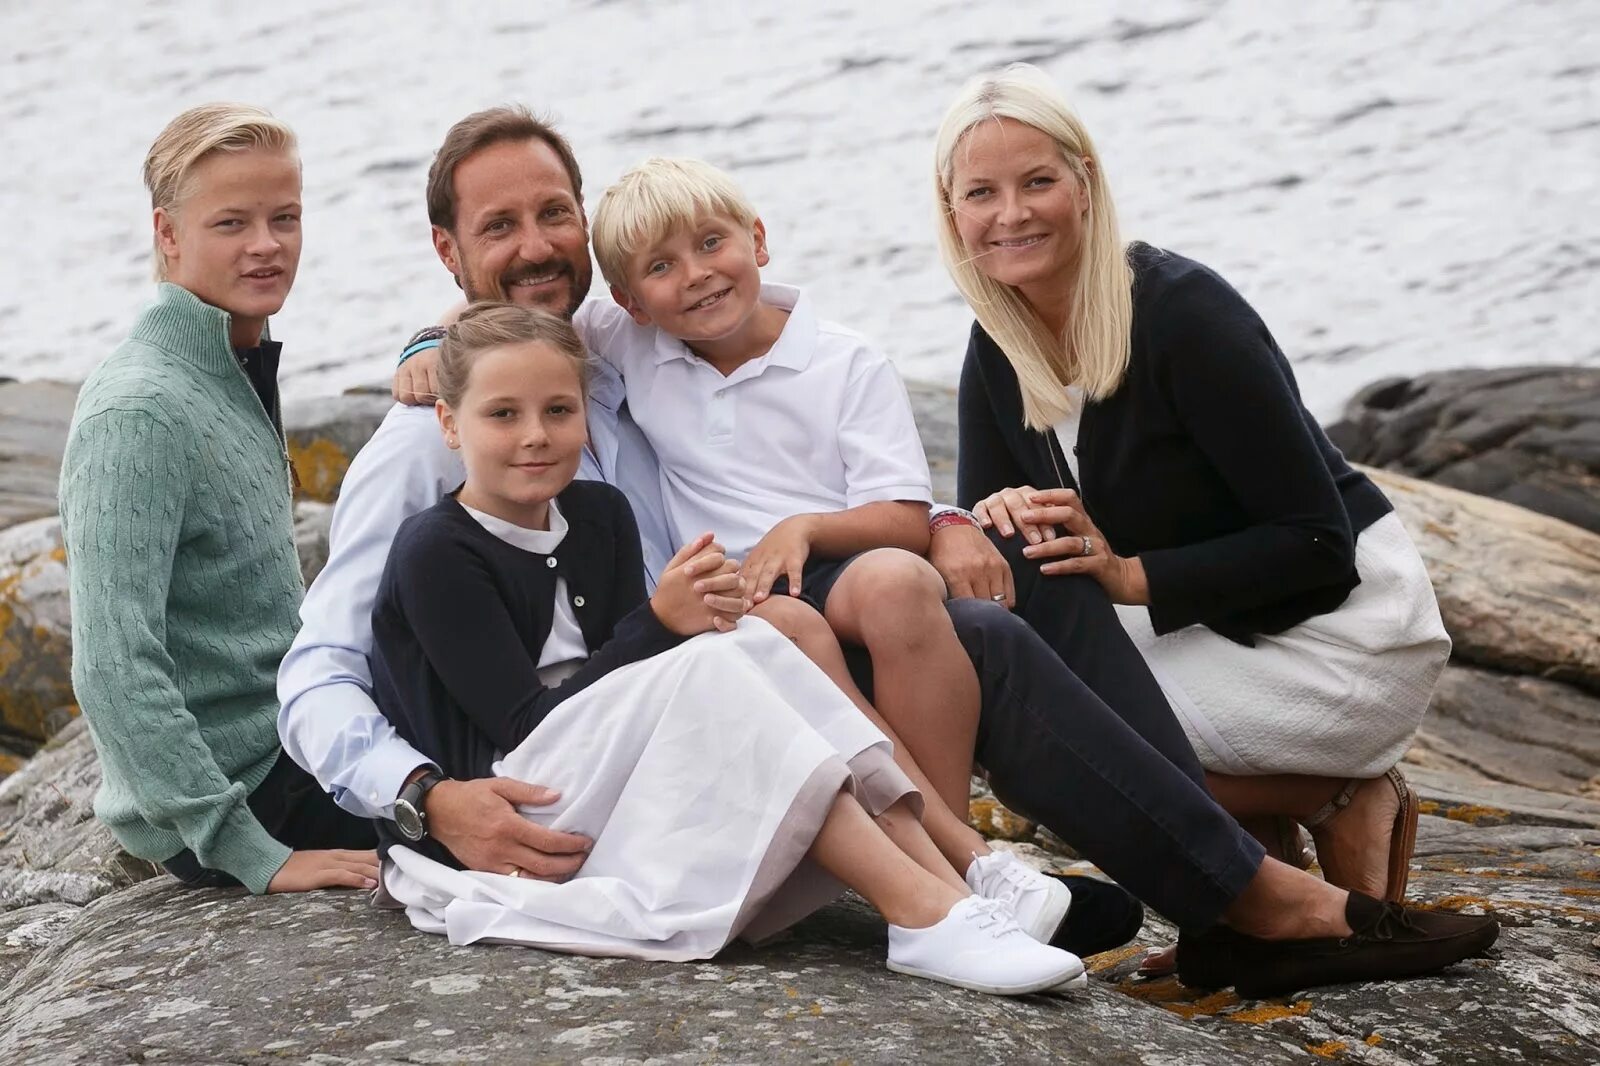 Королевская семья Норвегии Хокон. Метте-Марит. Метте-Марит с детьми. Кронпринц Норвегии Мариус борг Хёйби. История жизни обычной семьи 32